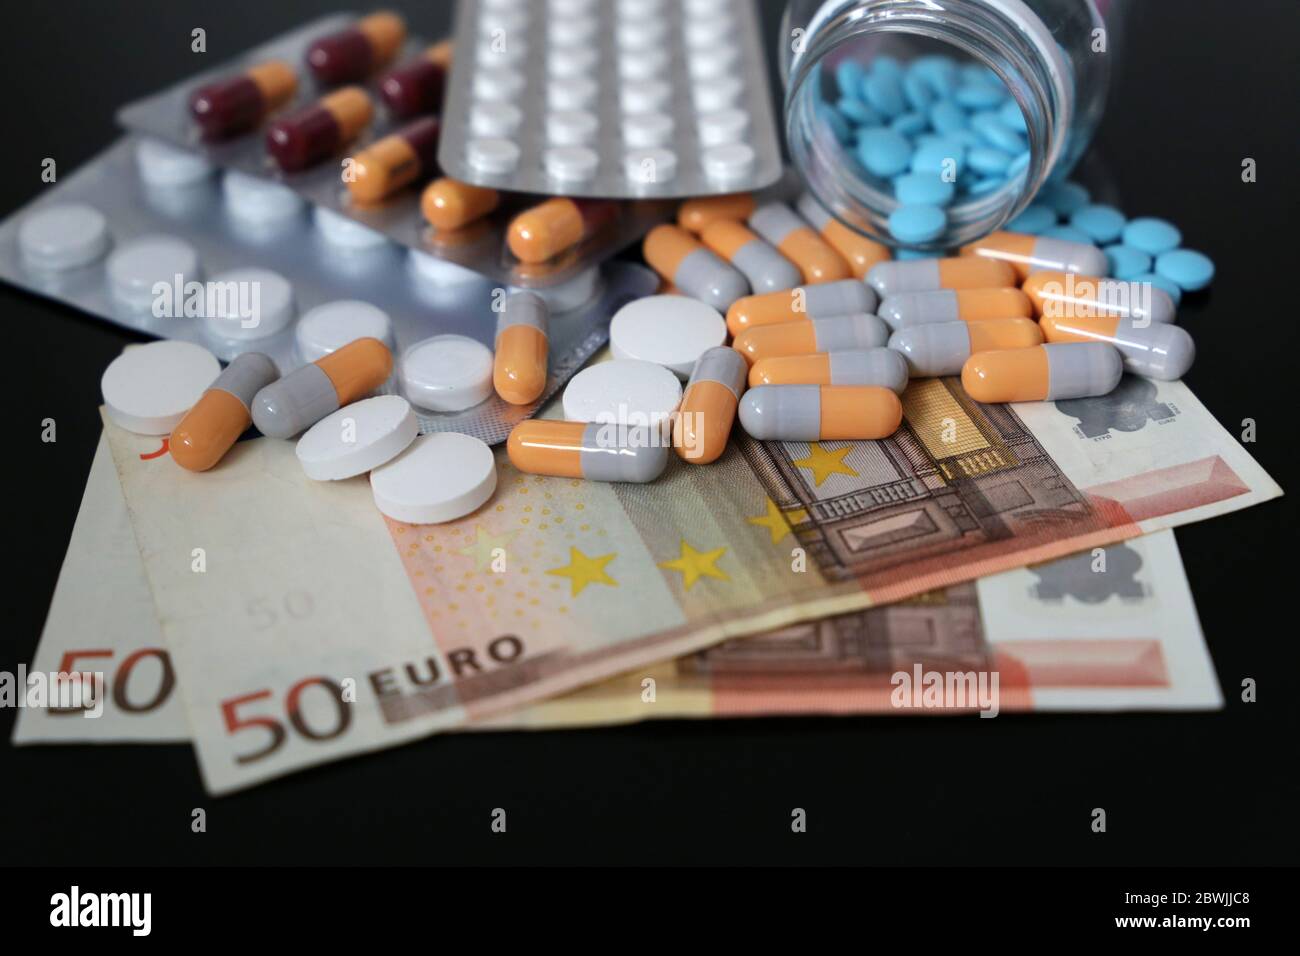 Pillole e capsule sulle bollette dell'euro. Concetto di sanità, commercio farmaceutico, prezzi dei farmaci nell'UE, farmacia, medicina ed economia Foto Stock